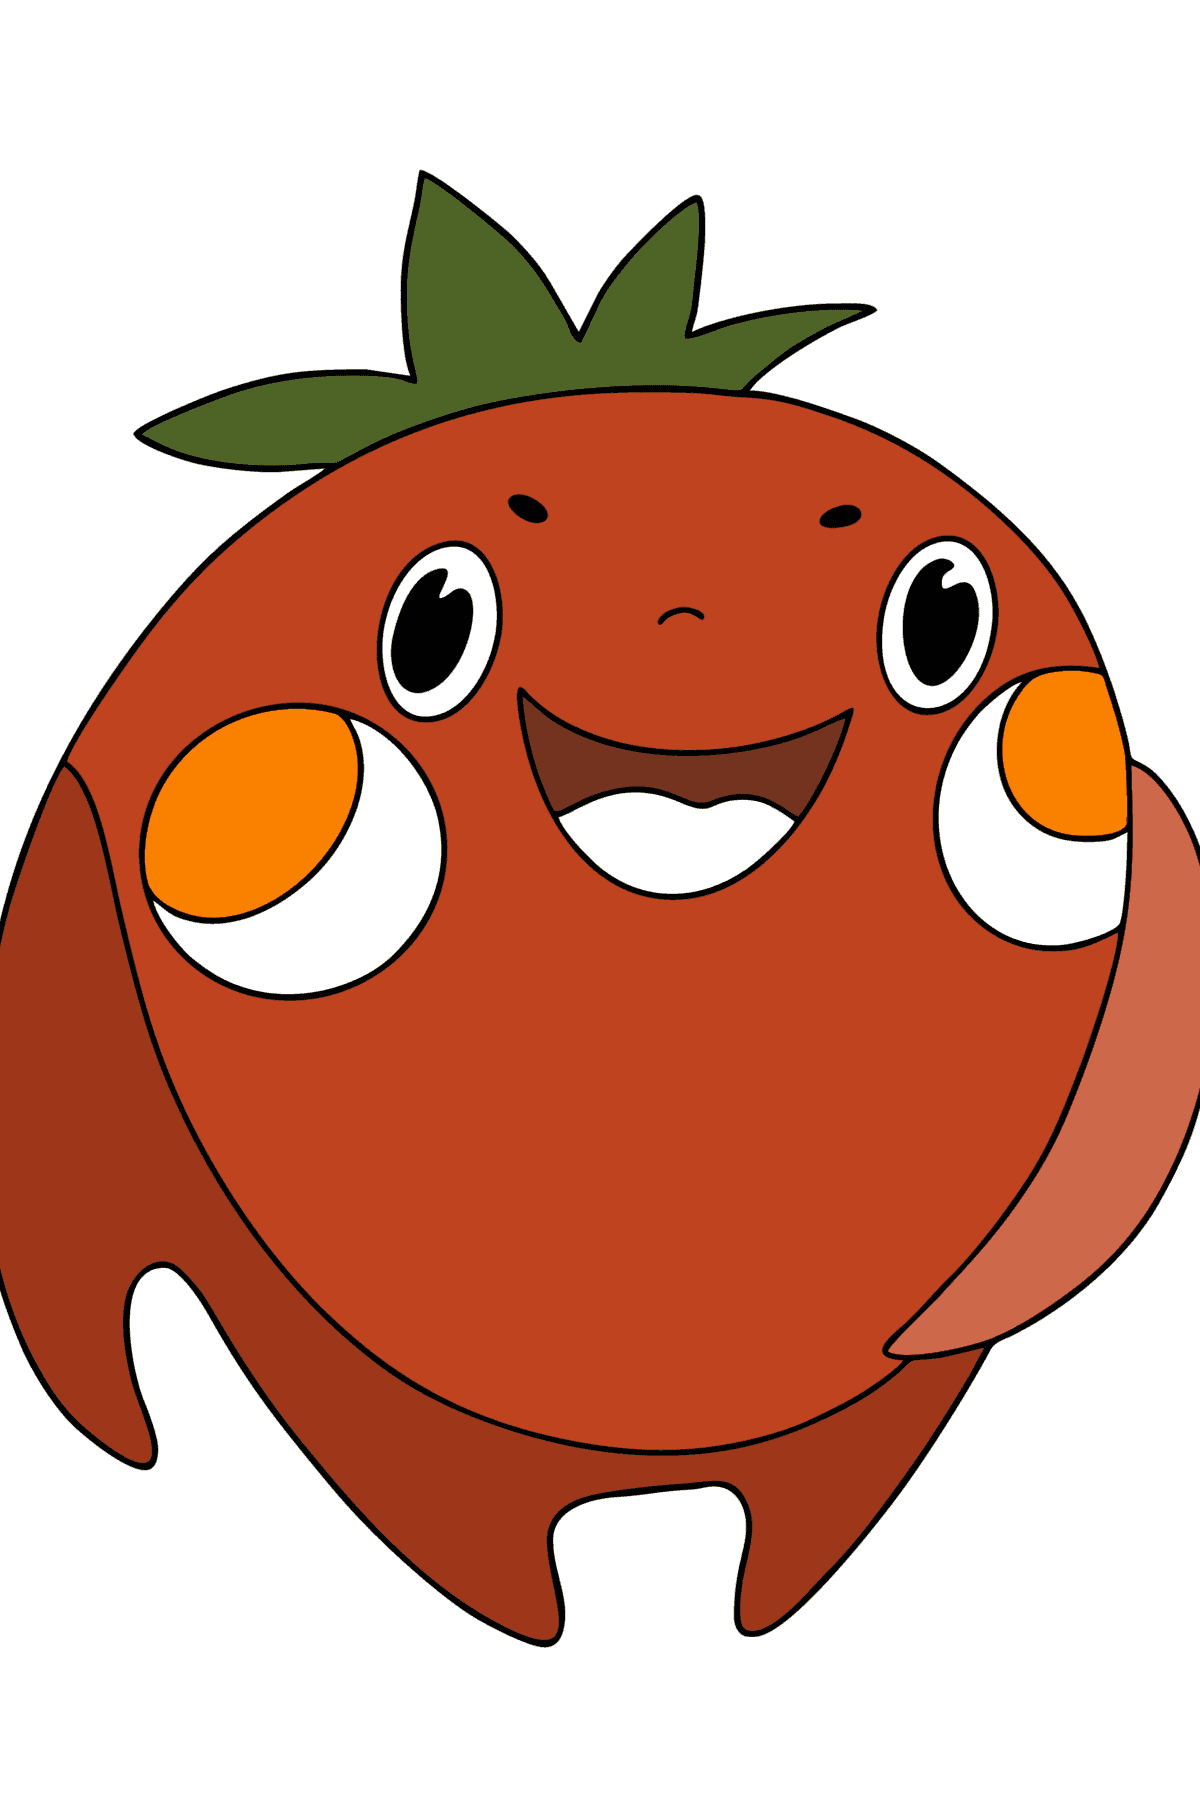 Cartoon-Tomate ausmalbild - Malvorlagen für Kinder